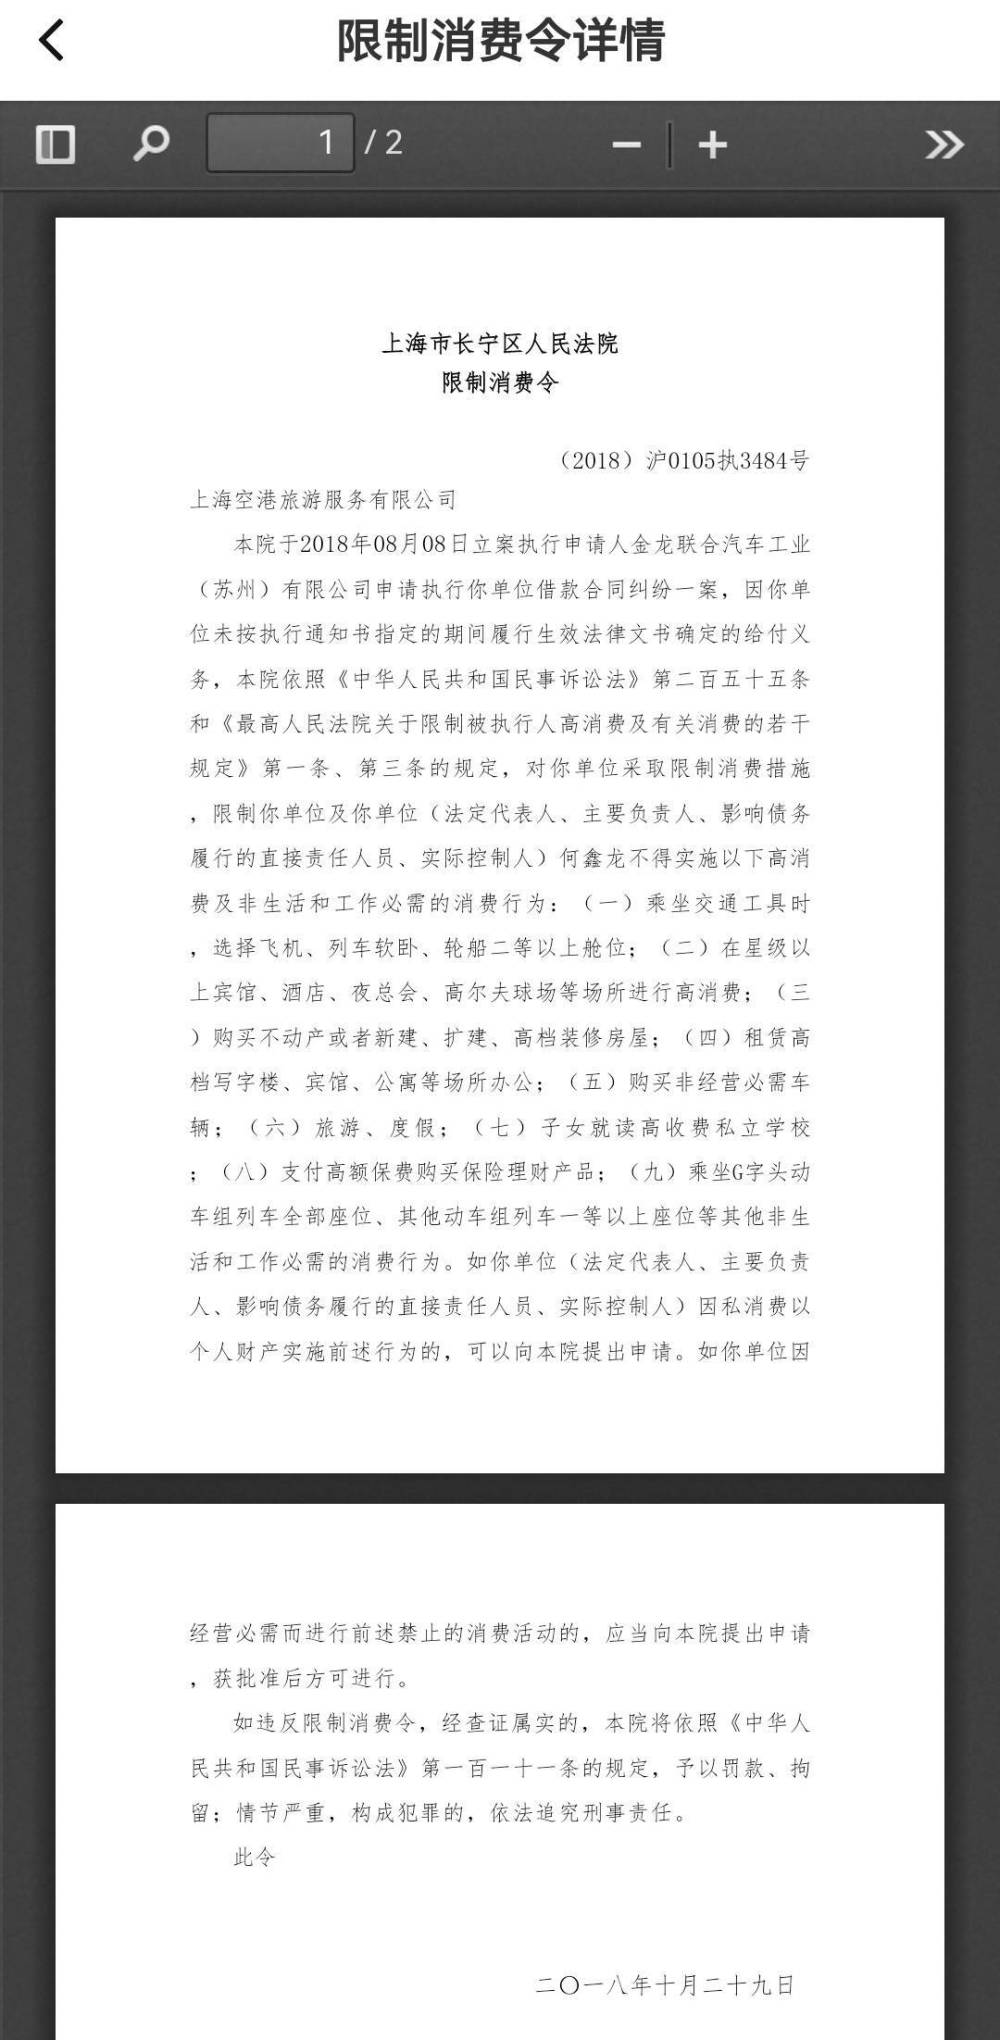 角子機：“鄭秀利”11天內在全國5個城市設立汽車租賃公司，重慶公司無法聯系